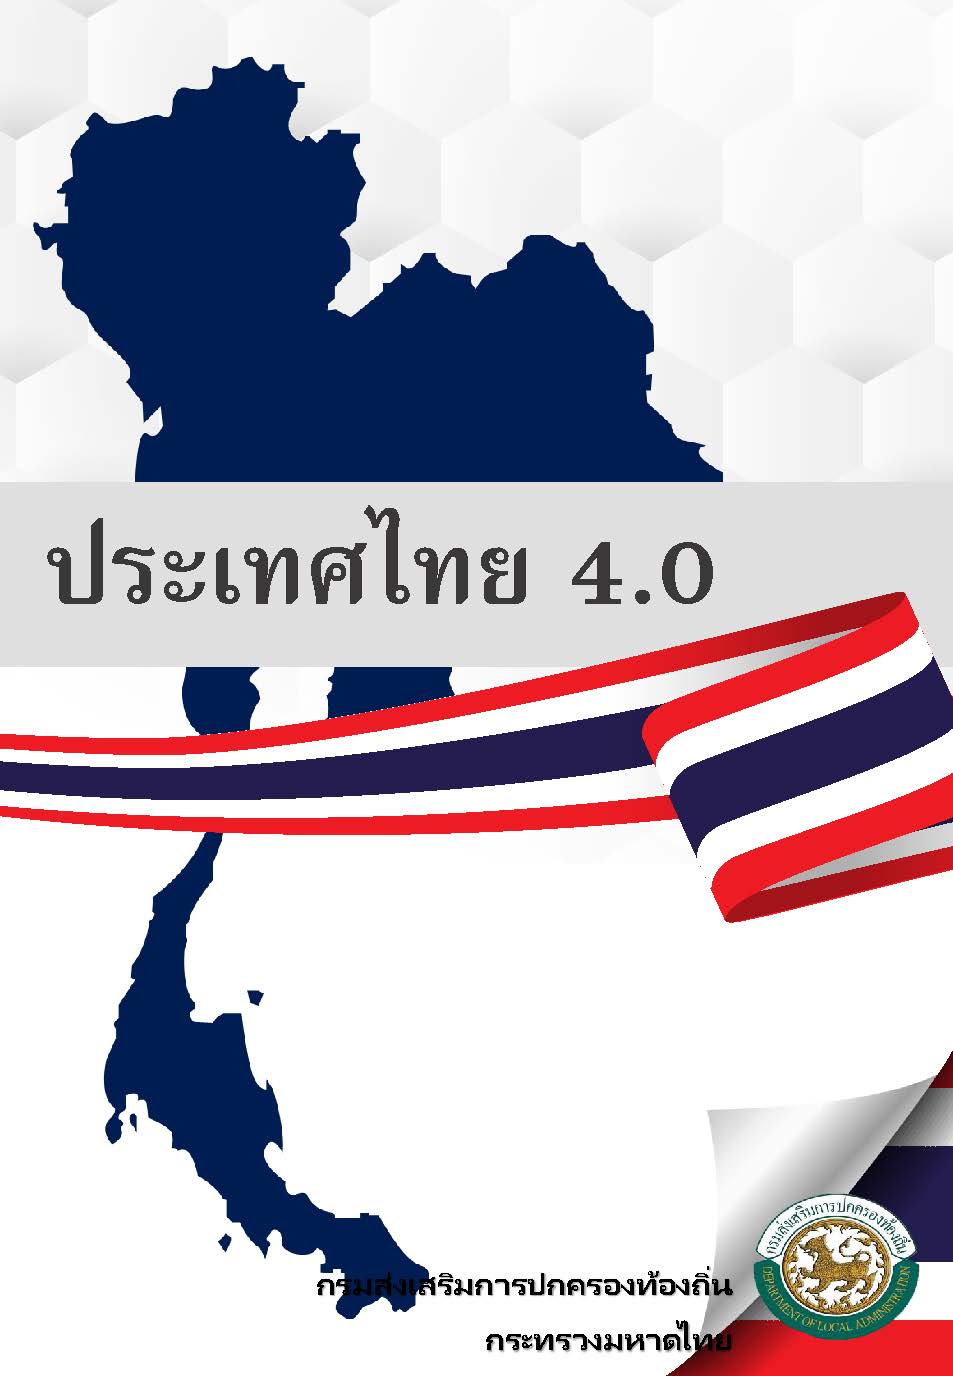 ประเทศไทย 4.0